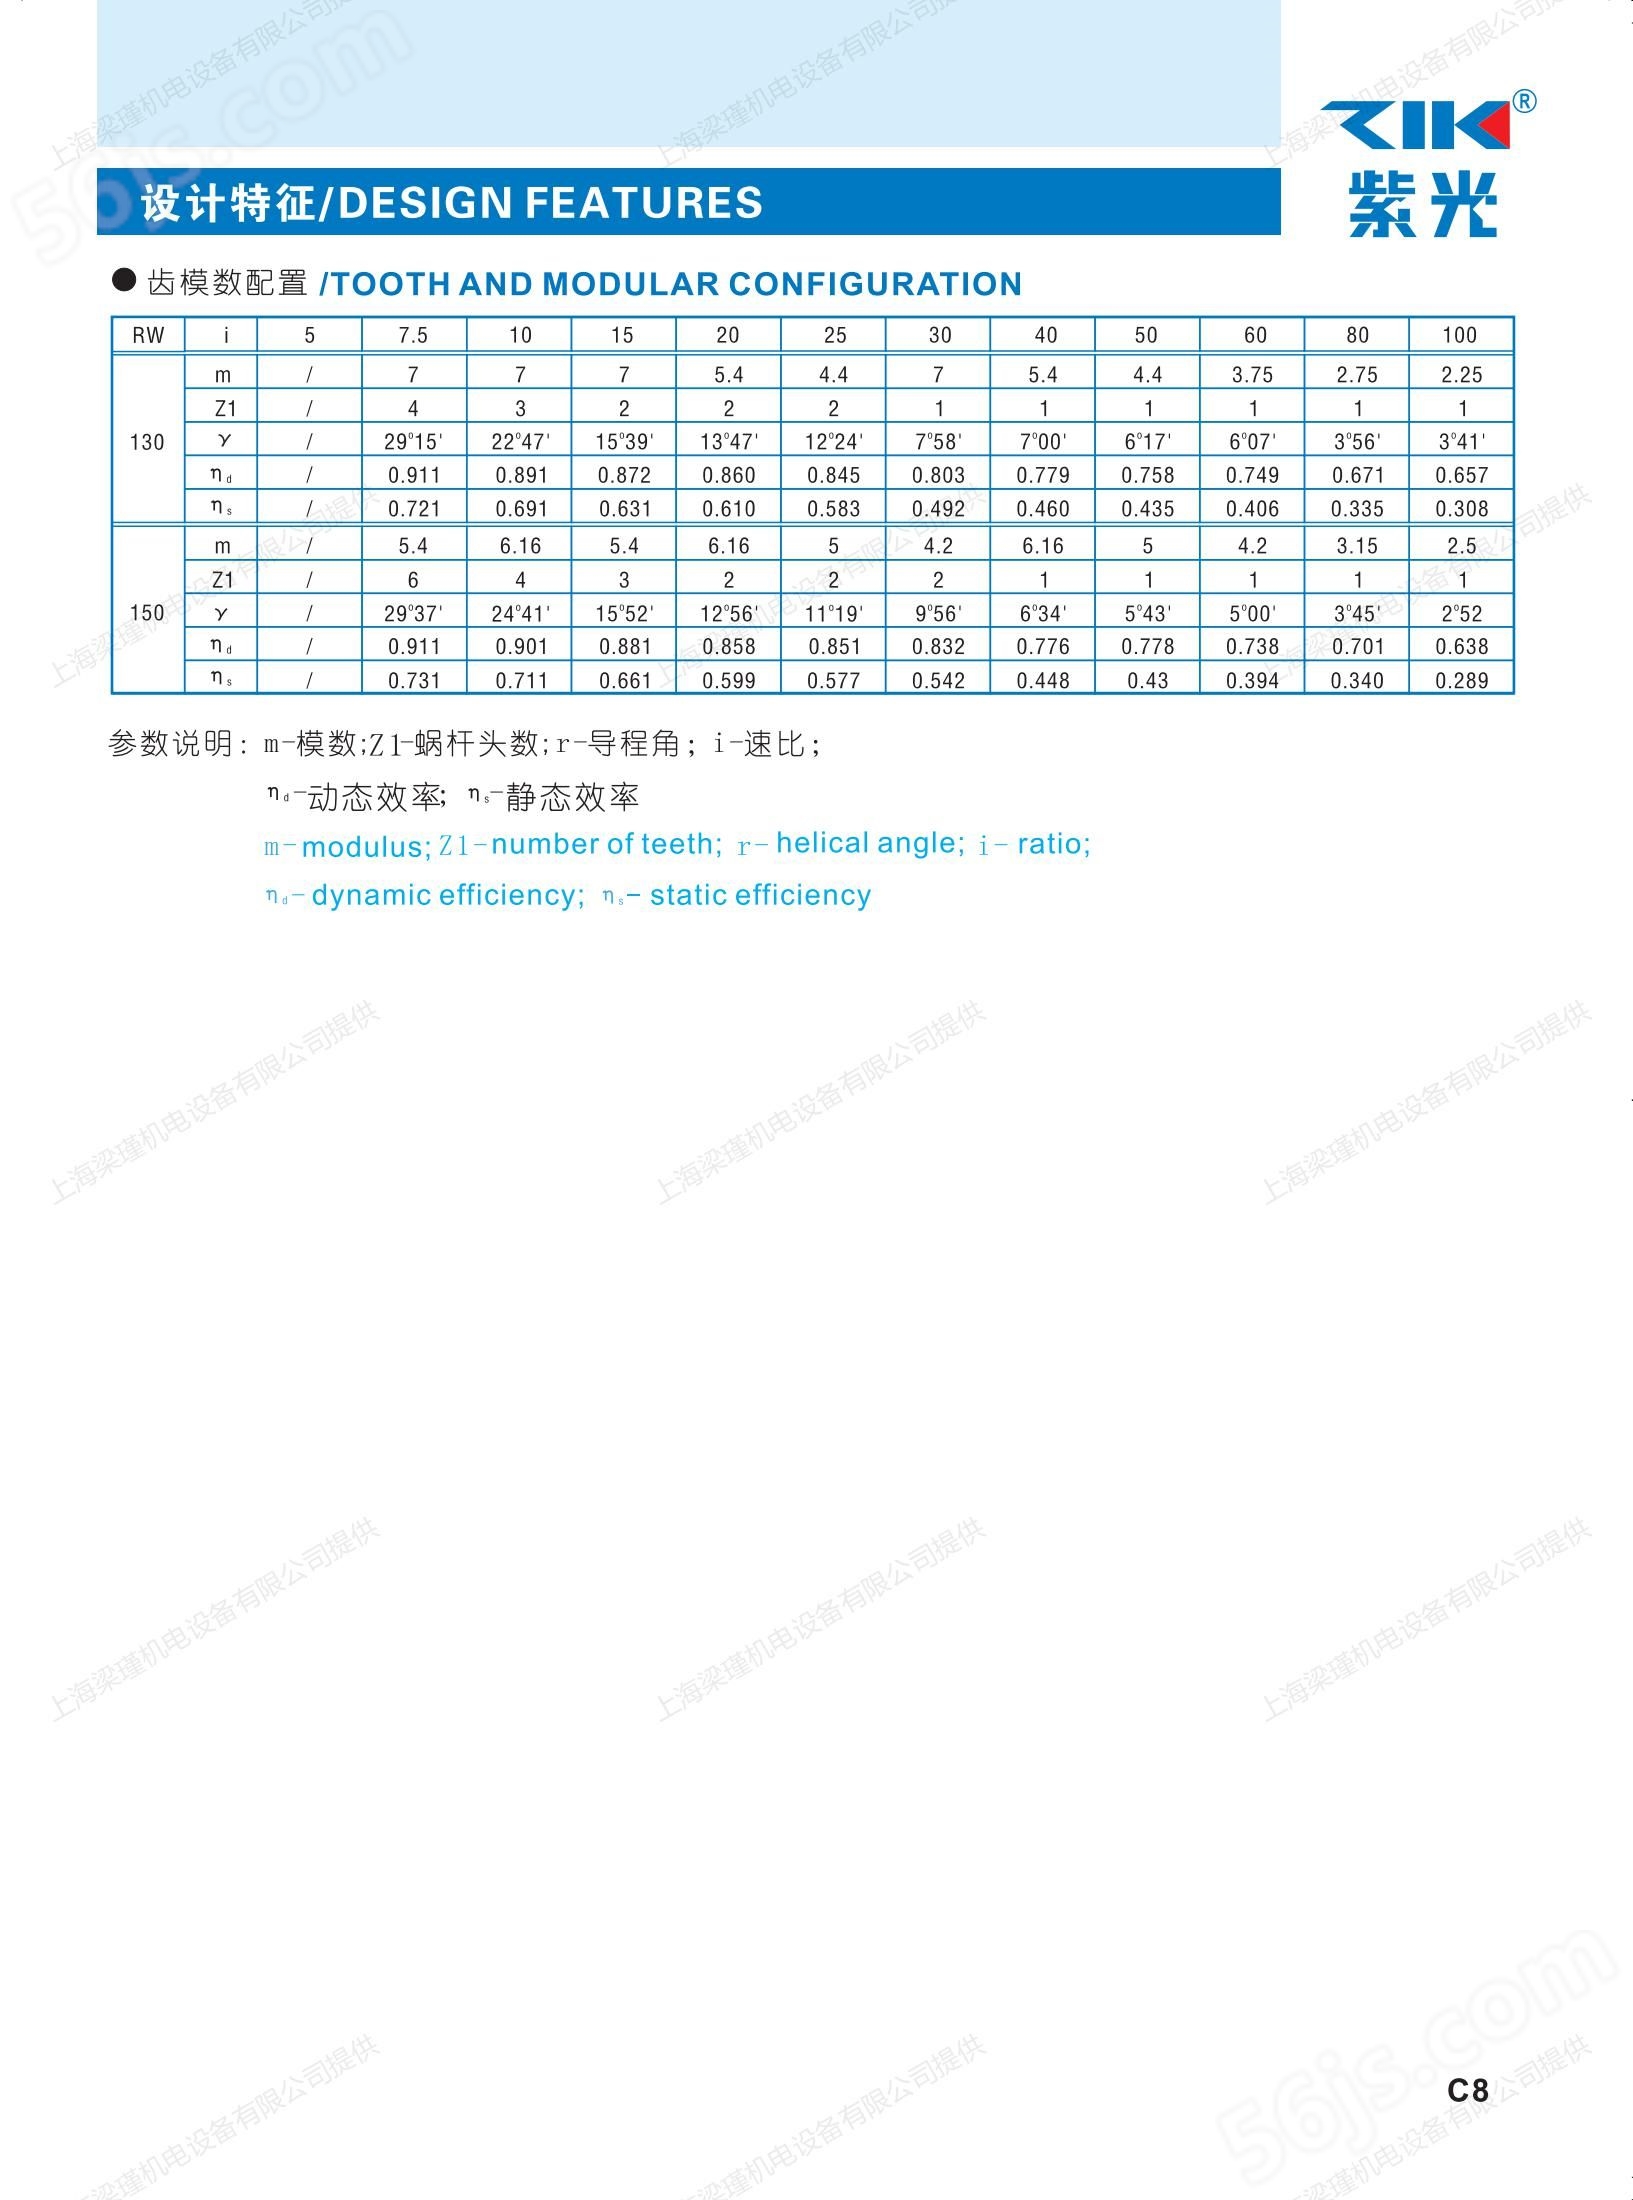 ZIK紫光减速机销售,NMRW050-50-MS7134-B5蜗轮蜗杆减速电机,上海梁瑾机电设备有限公司